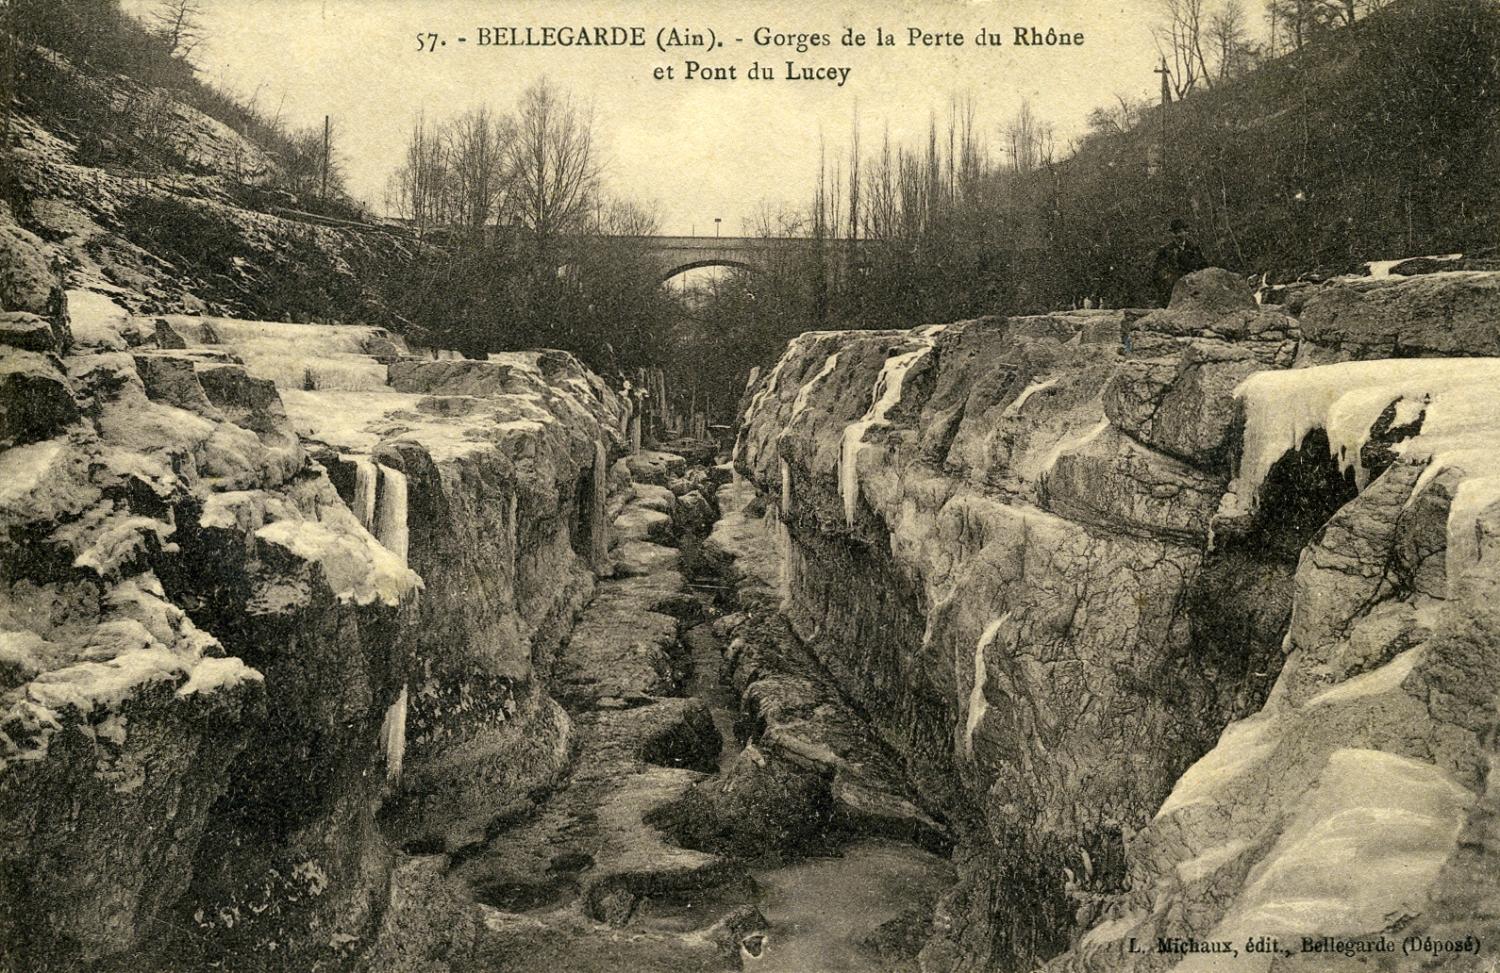 Bellegarde (Ain) - Gorges de la Perte du Rhône et Pont du Lucey.